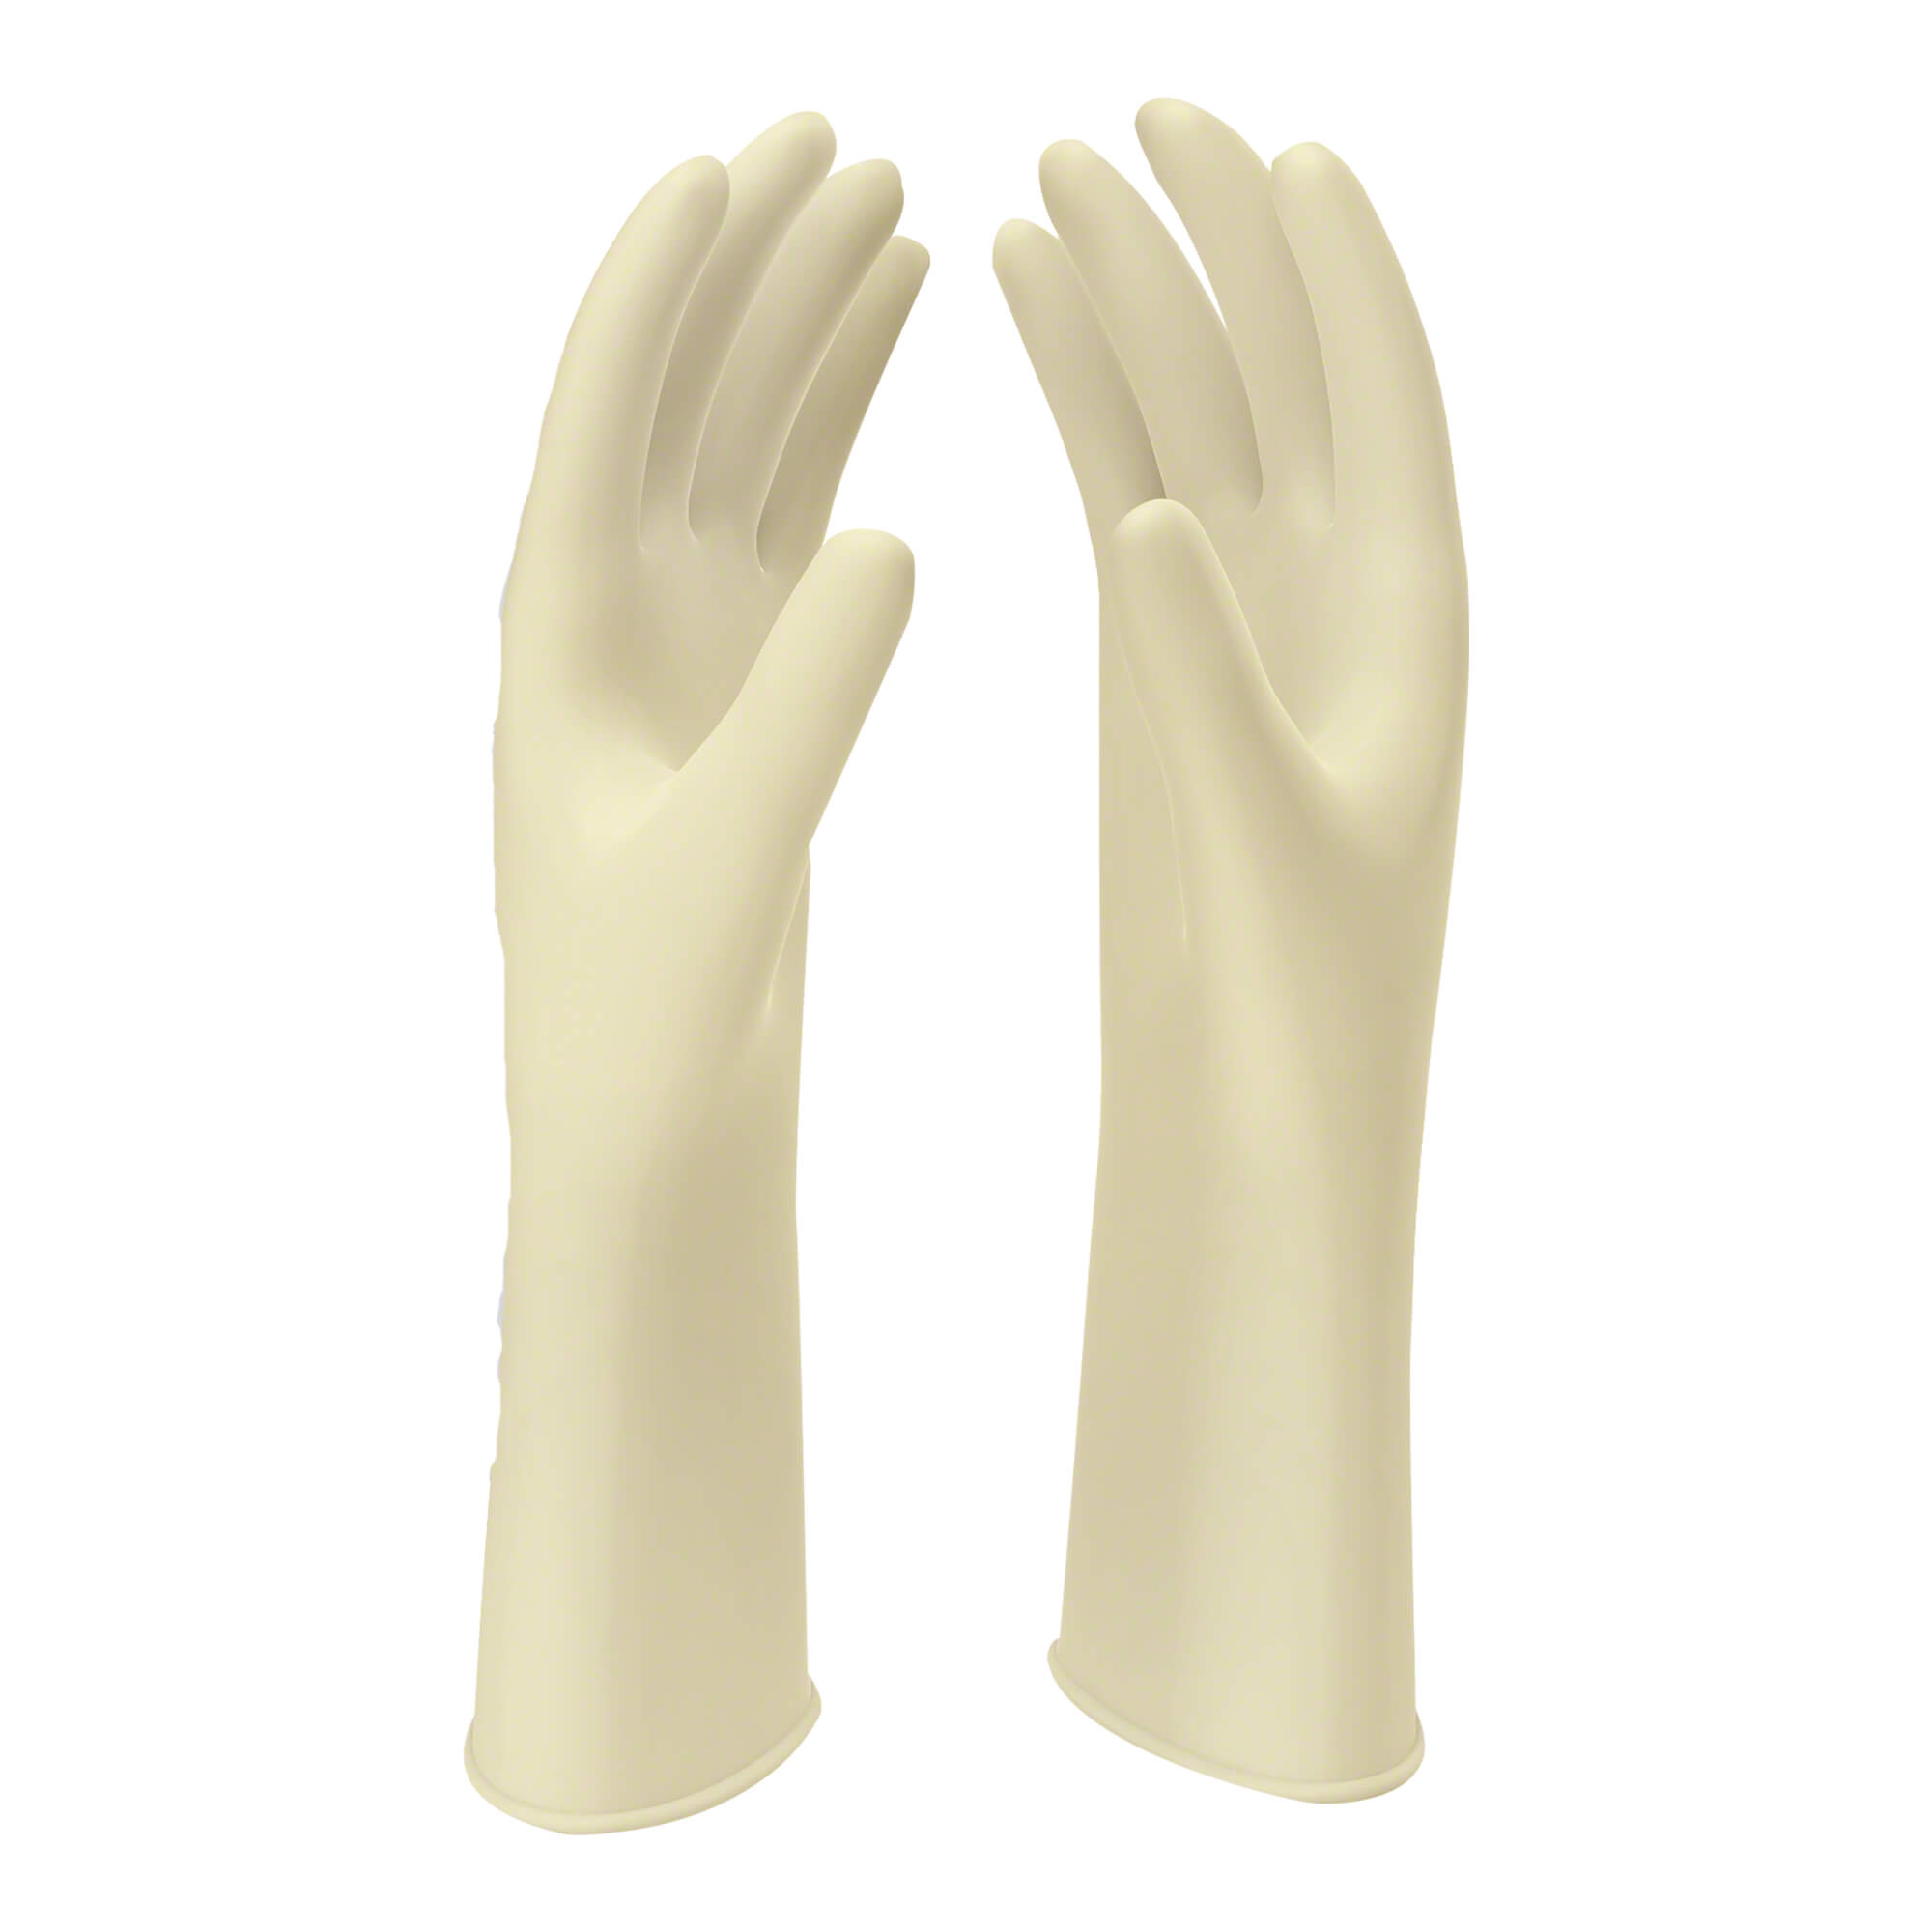 Naturweiße Latex OP-Handschuhe. Größe 8,5.